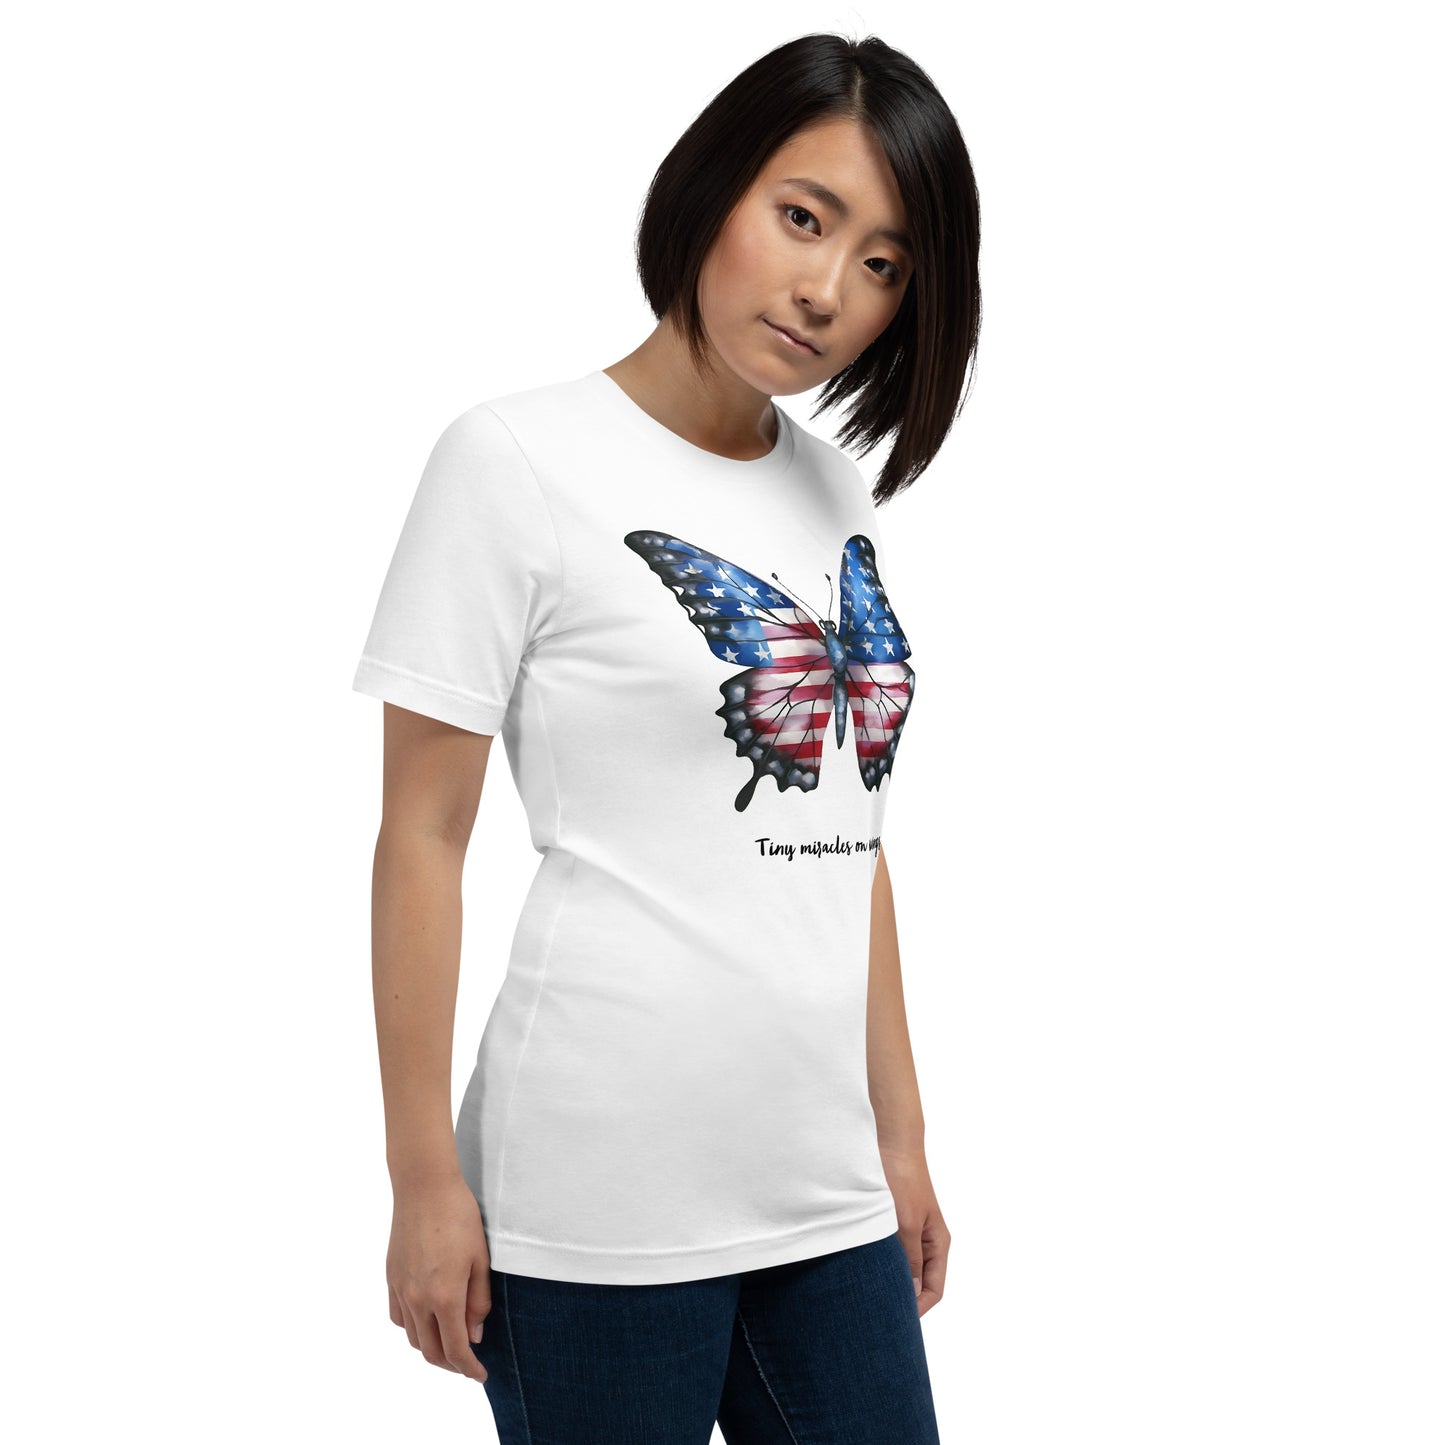 Camisa de mariposa patriótica personalizable para el verdadero amante de las mariposas que hay en ti